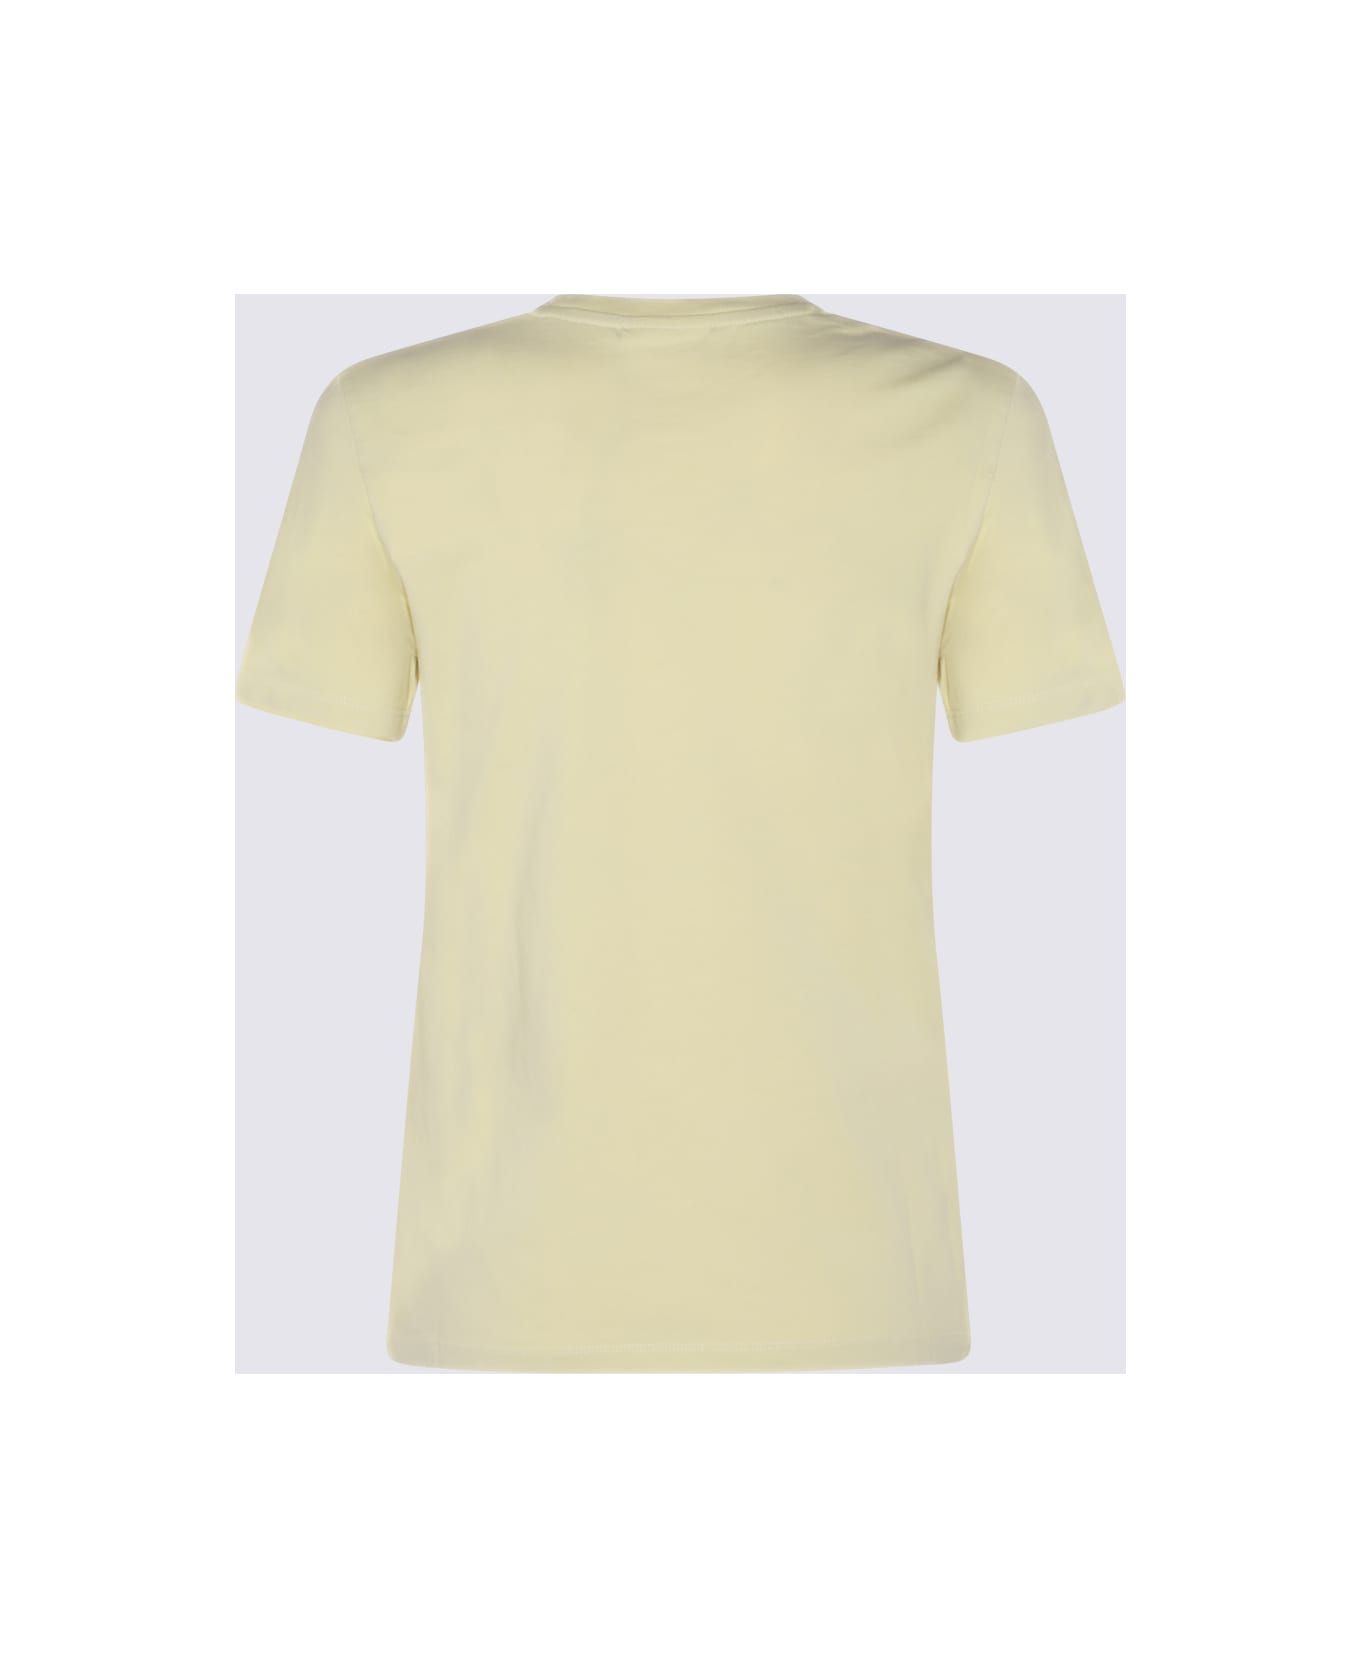 Maison Kitsuné Yellow Cotton Fox Head T-shirt - CHALK YELLOW Tシャツ